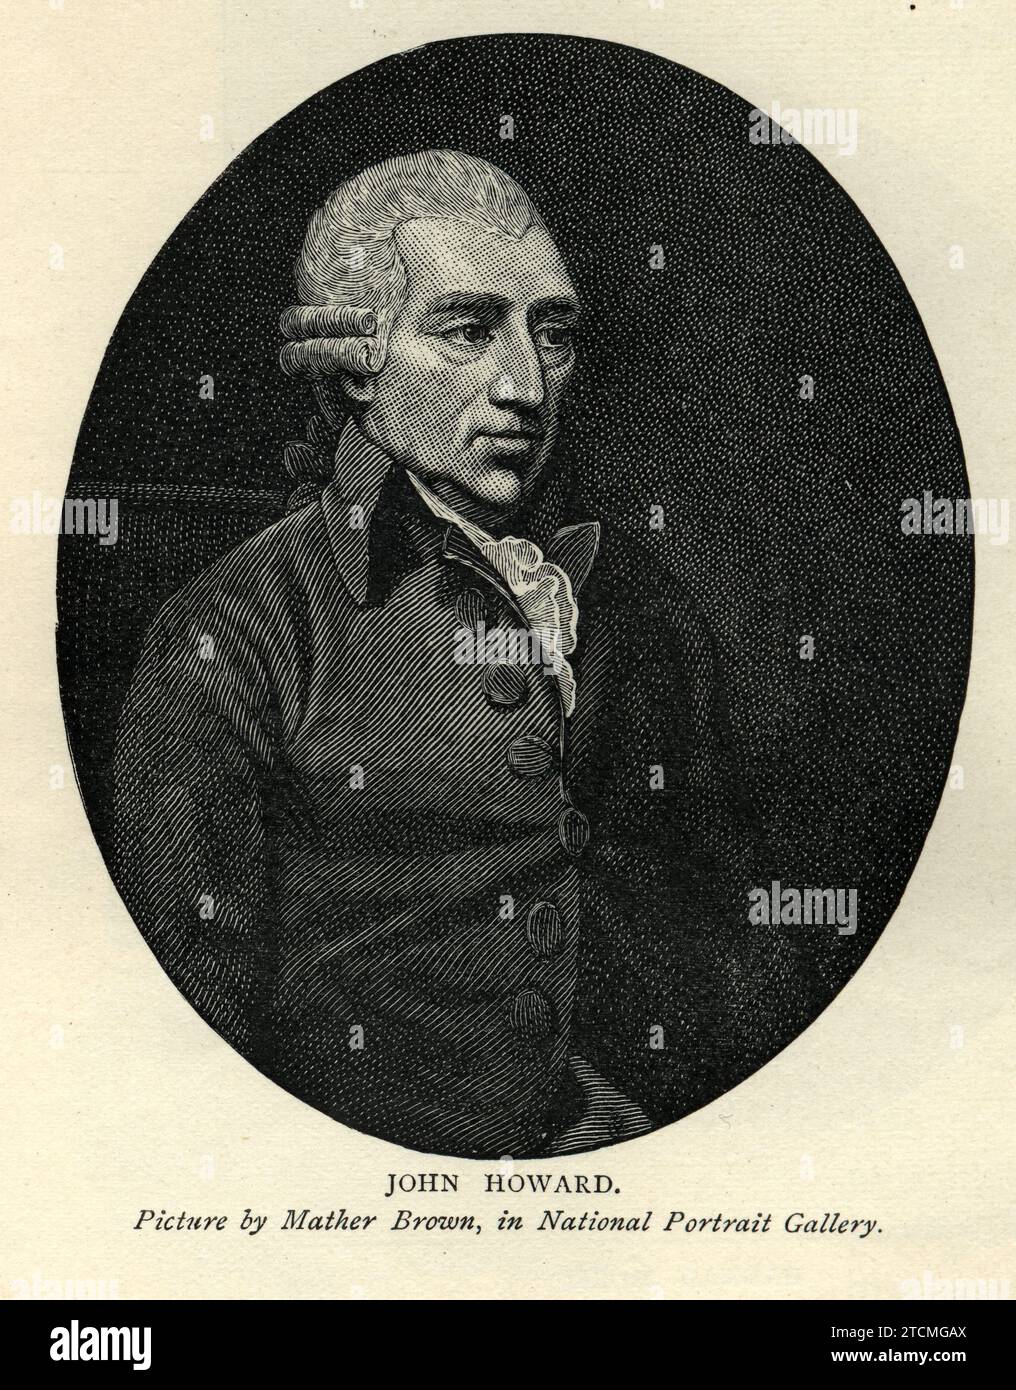 John Howard, ein Philanthrope aus dem 18. Jahrhundert und früherer englischer Gefängnisreformer, Portrait, Vintage Illustration Stockfoto